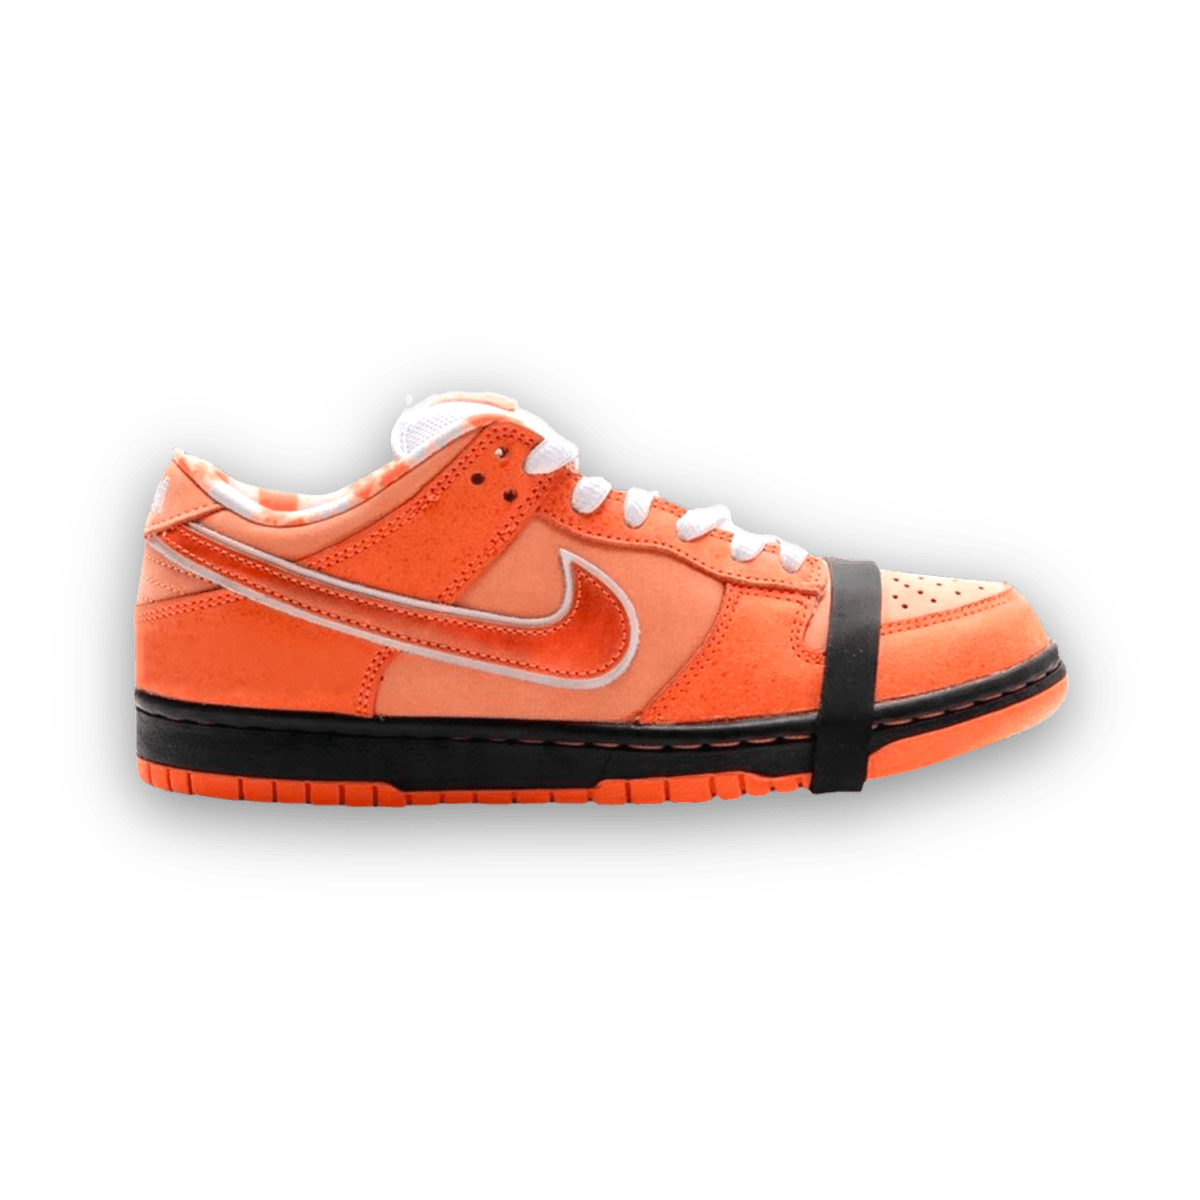 Concepts x Dunk Low SB 'Orange Lobster' - Low Sneaker - Jawns on Fire Sneakers & Streetwear